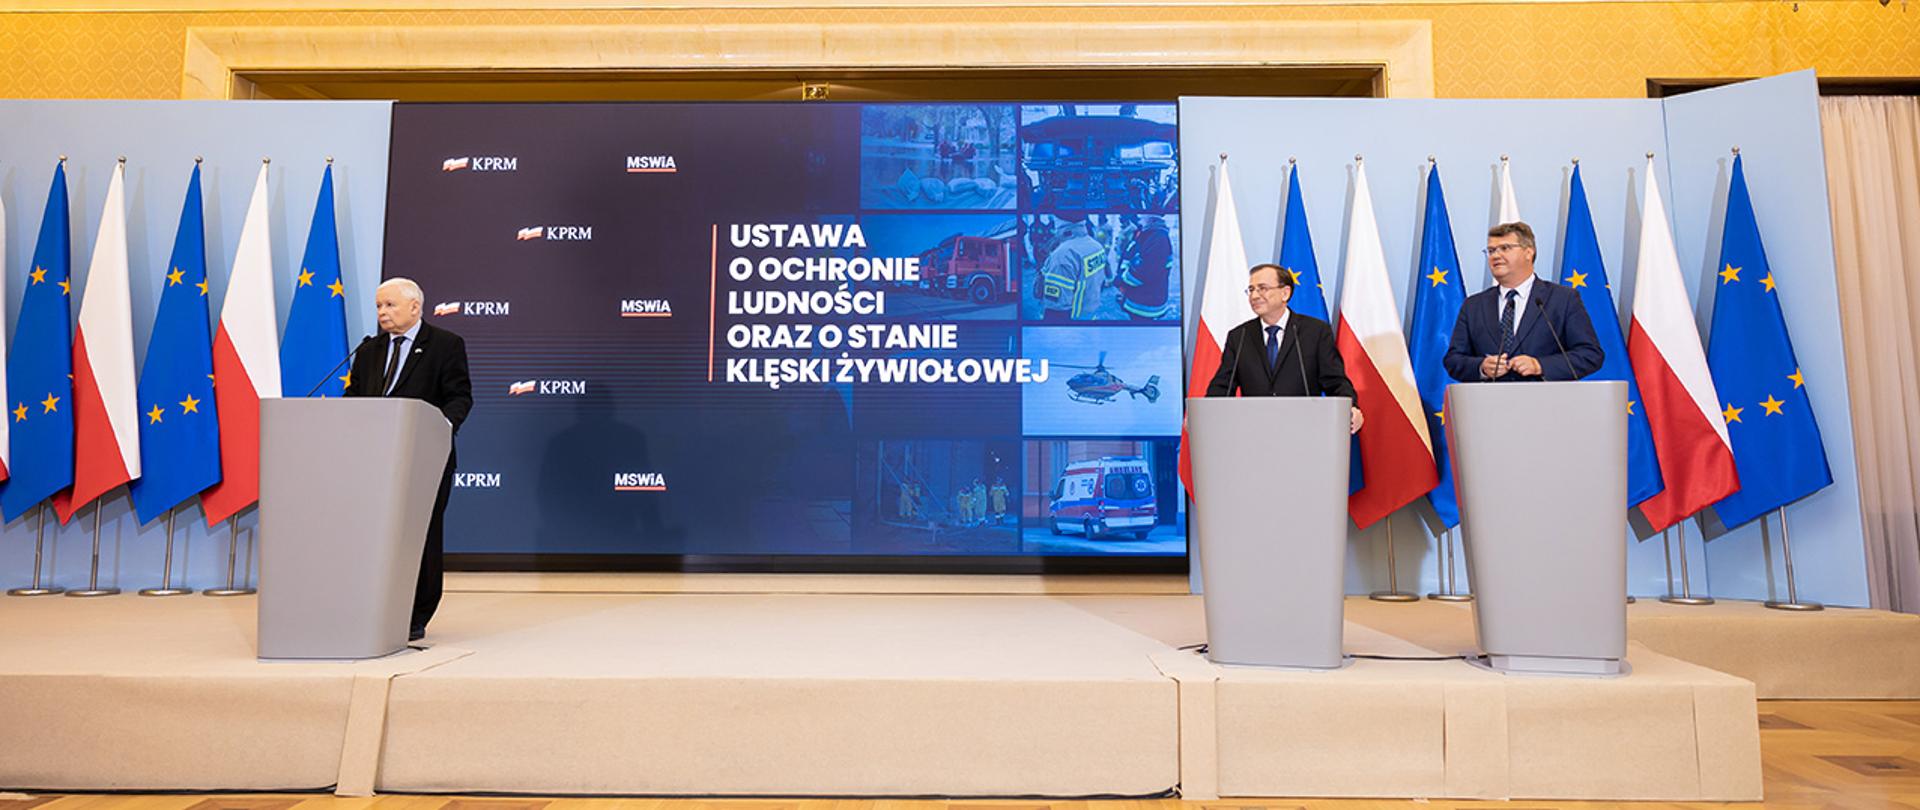 Na zdjęciu widać wicepremiera Jarosława Kaczyńskiego, ministra Mariusza Kamińskiego i wiceministra Macieja Wąsika stojących za mównicami w trakcie konferencji prasowej.